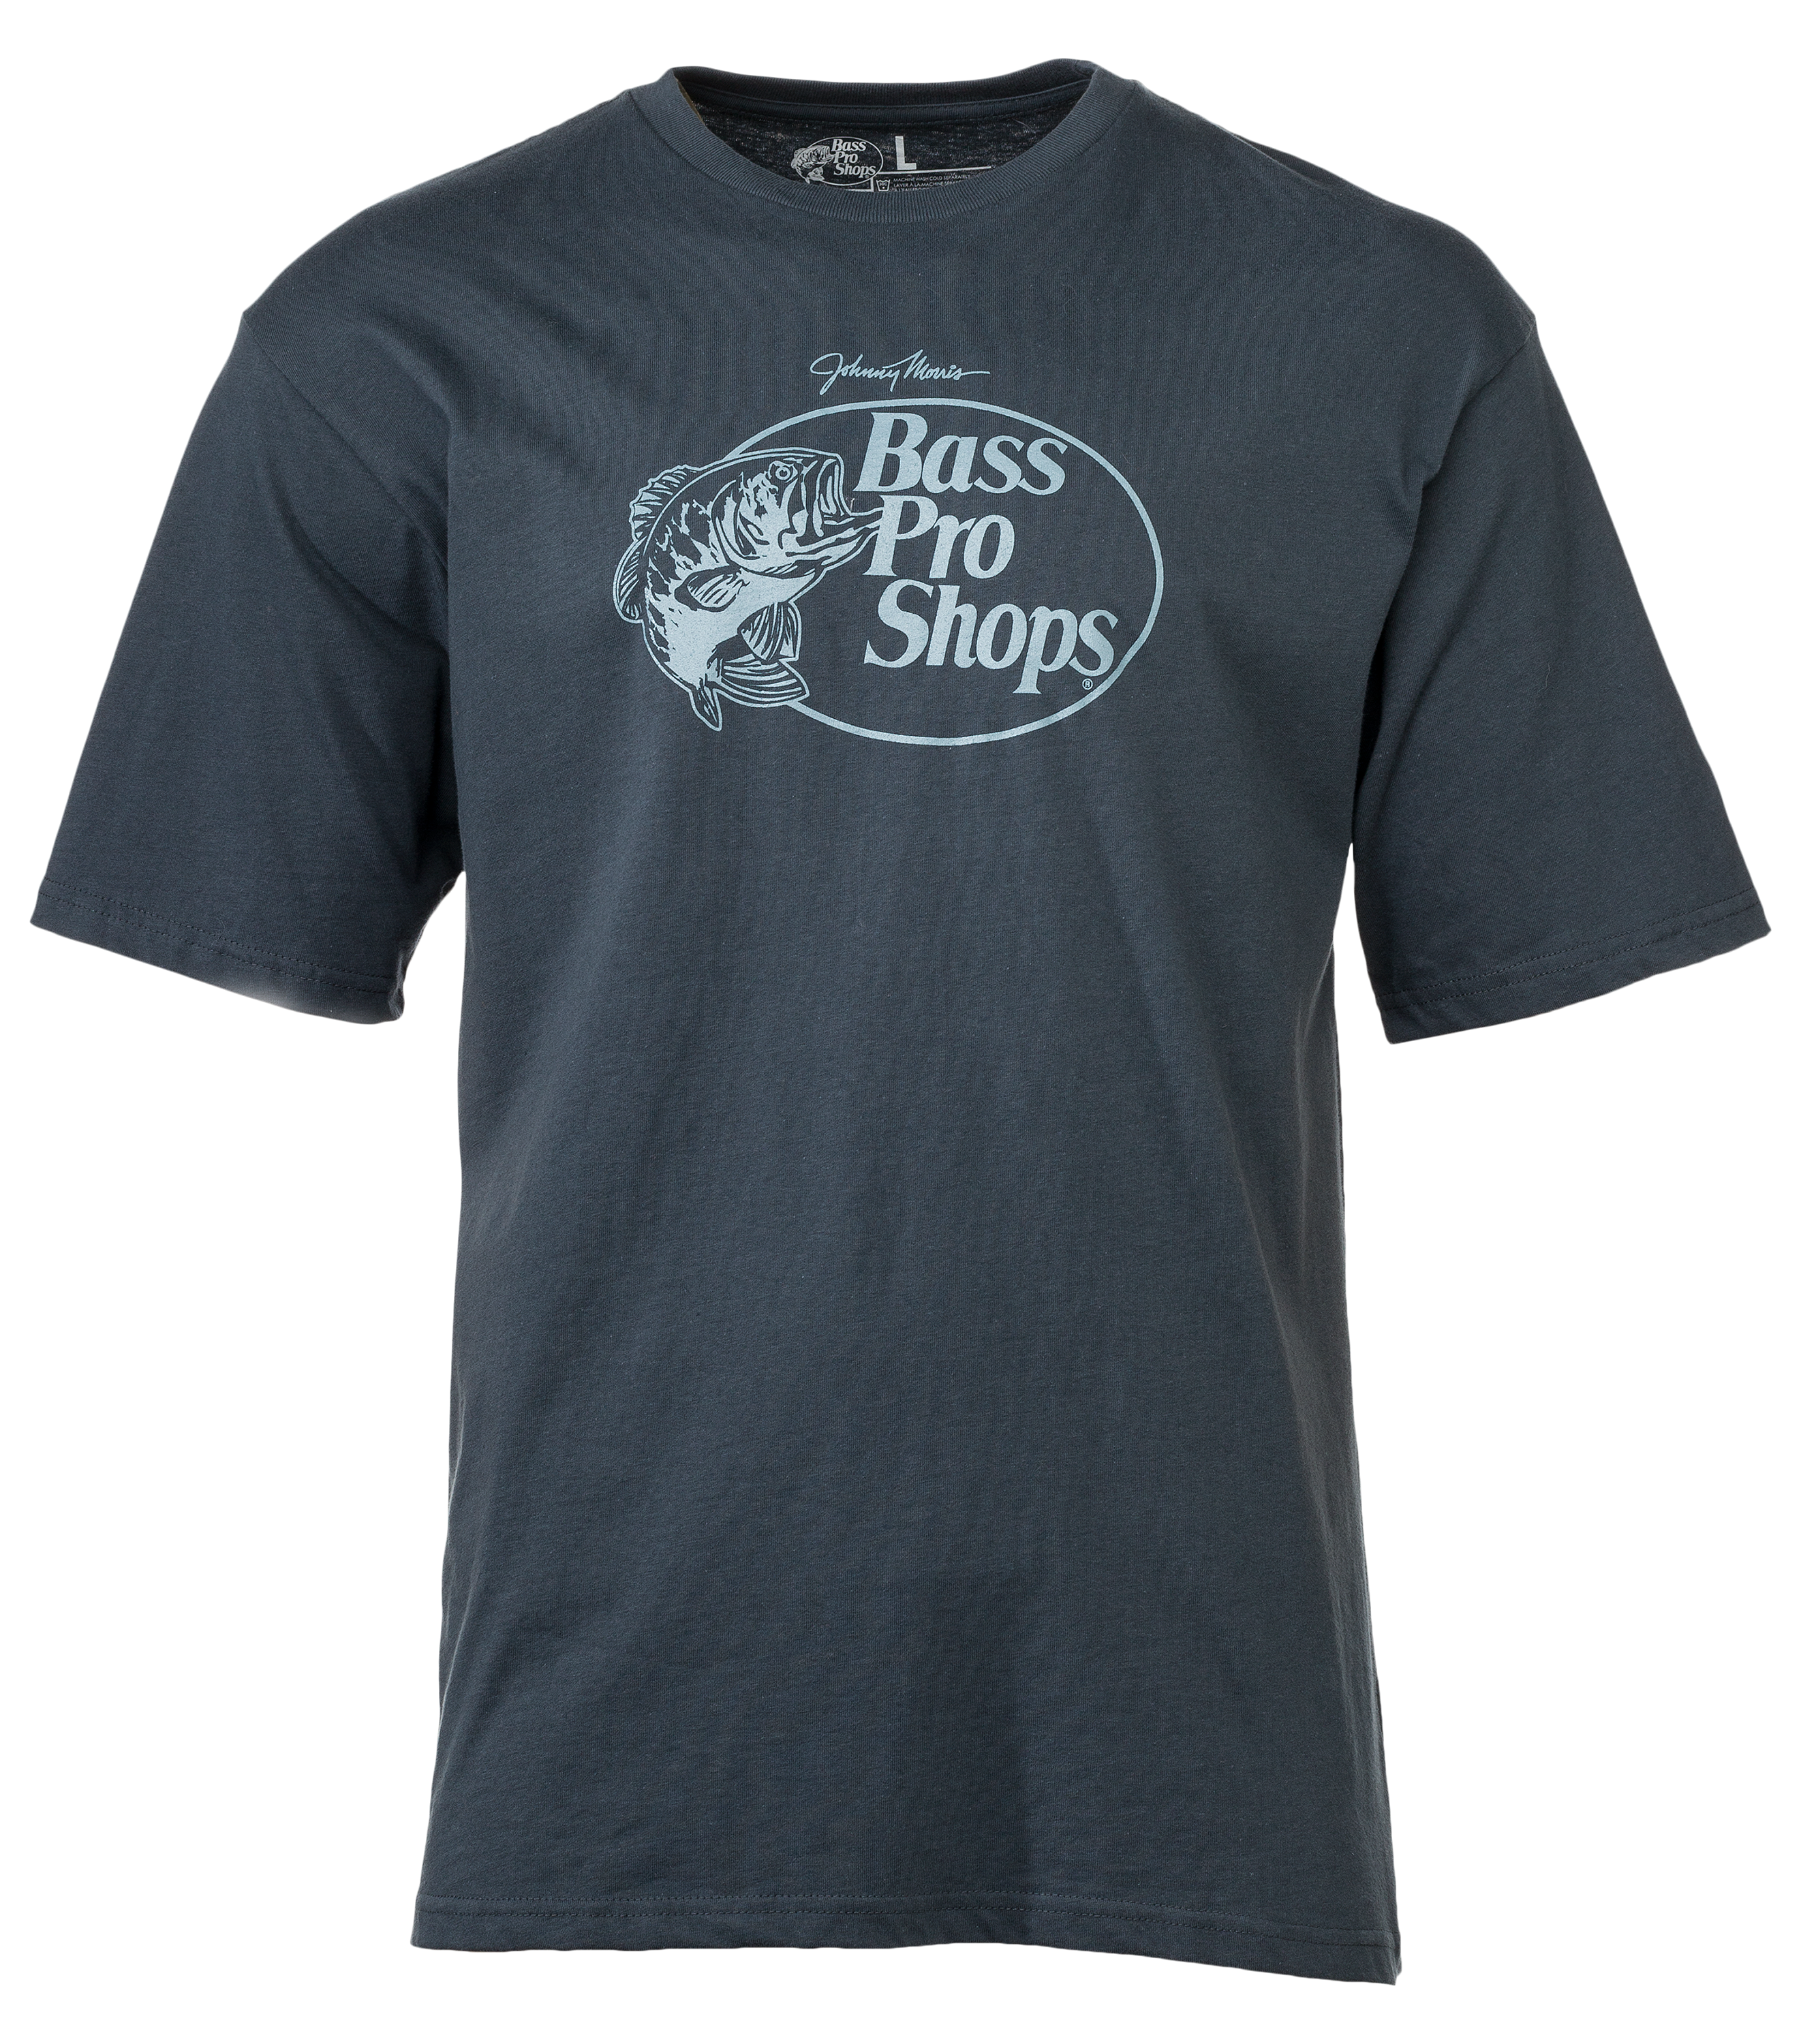 Bass Pro Shops Original Logo 2.0 Short-Sleeve T-Shirt for Men